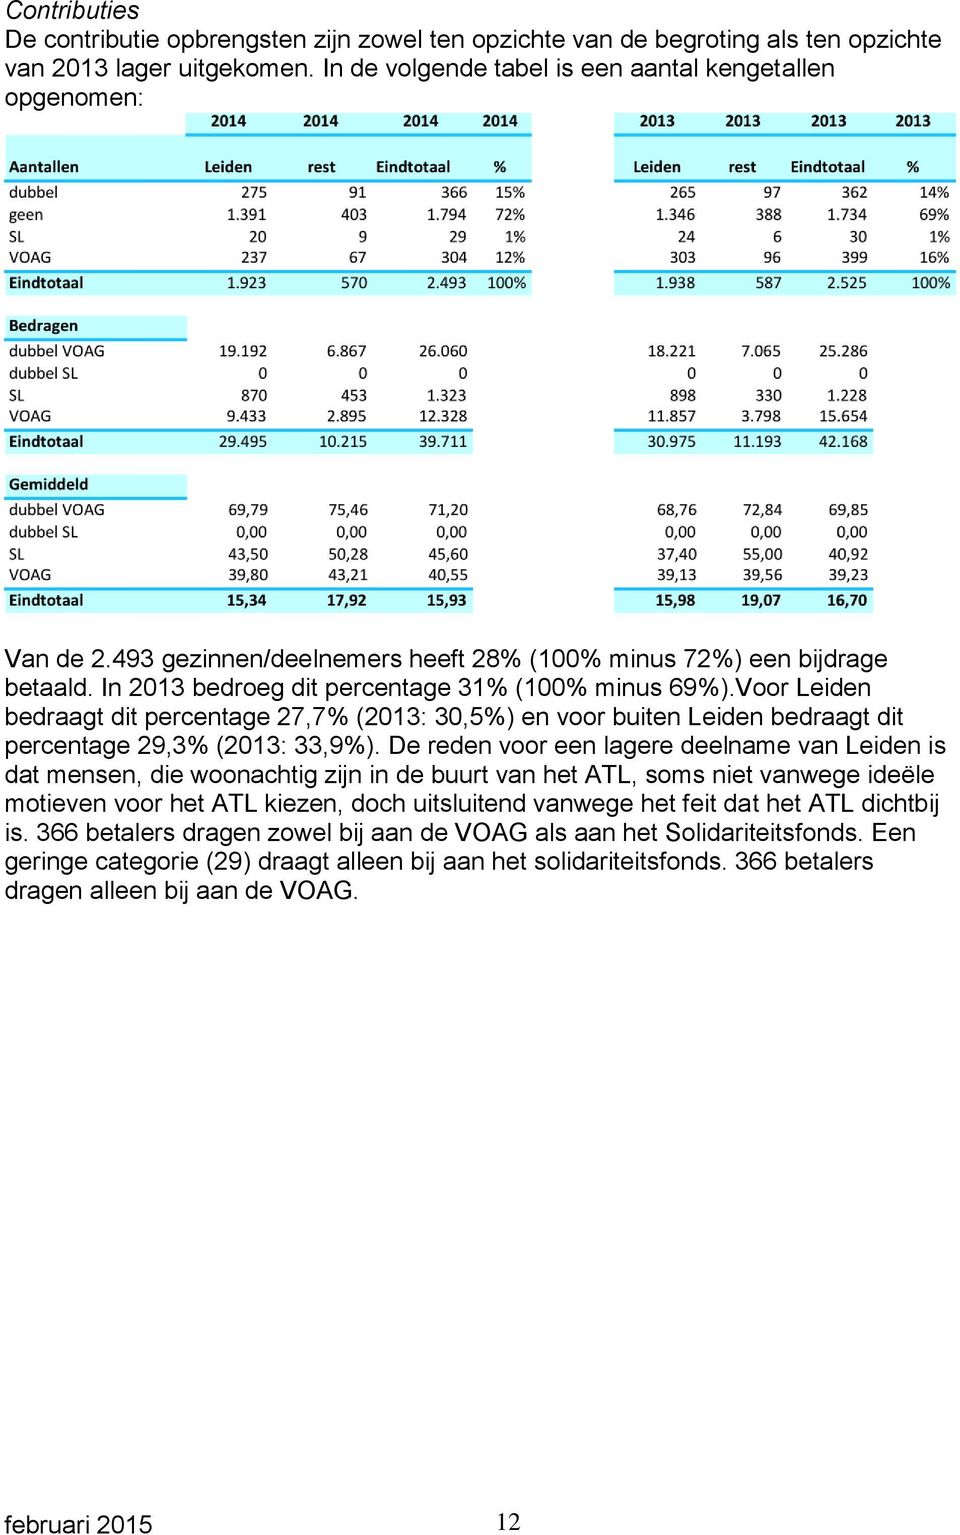 Voor Leiden bedraagt dit percentage 27,7% (2013: 30,5%) en voor buiten Leiden bedraagt dit percentage 29,3% (2013: 33,9%).